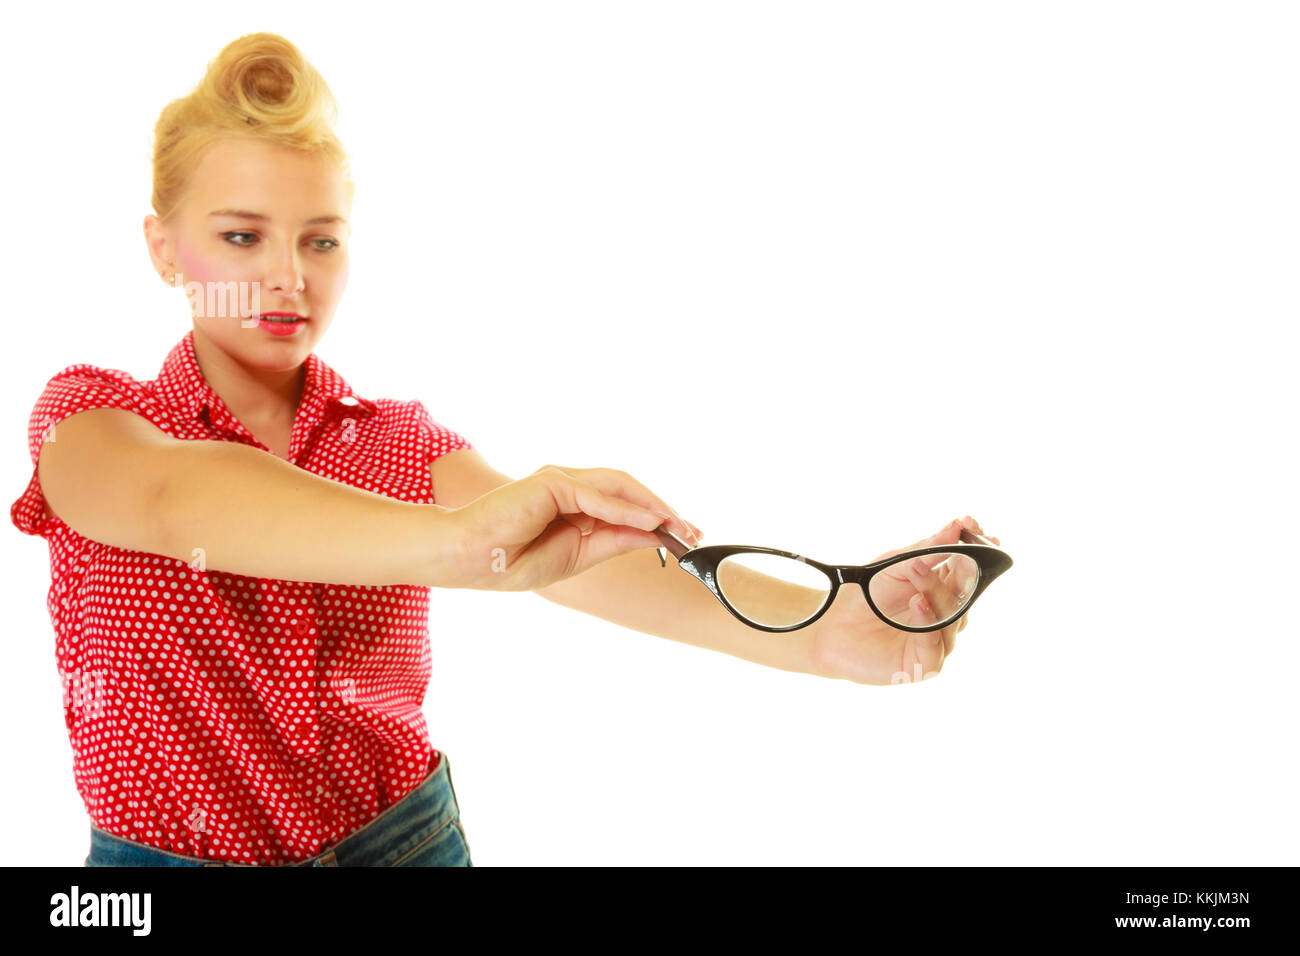 Augenheilkunde, Sehstörungen, stilvolle Brillen Konzept. blond Pin-up-Girl das Tragen der roten shirt Holding schwarz Retro Gläser. Studio shot isoliert Stockfoto